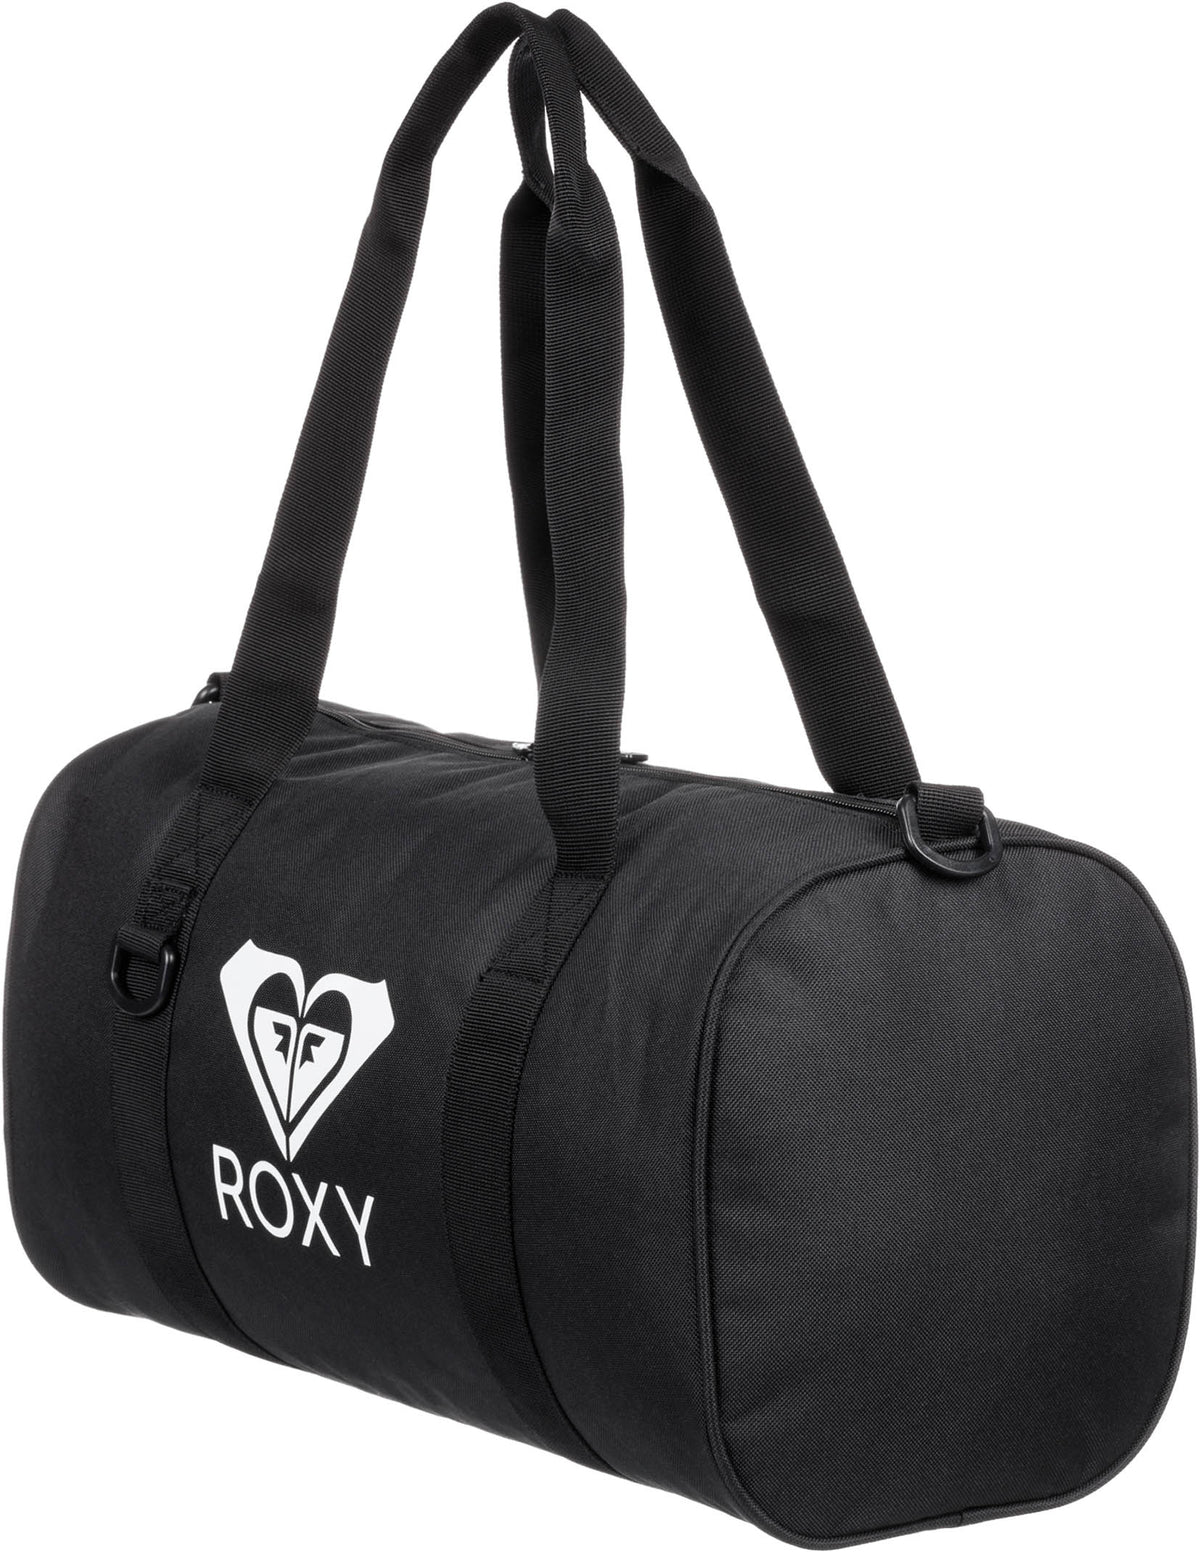 Roxy Vitamin Sea 19L Duffle Bag - Anthracite